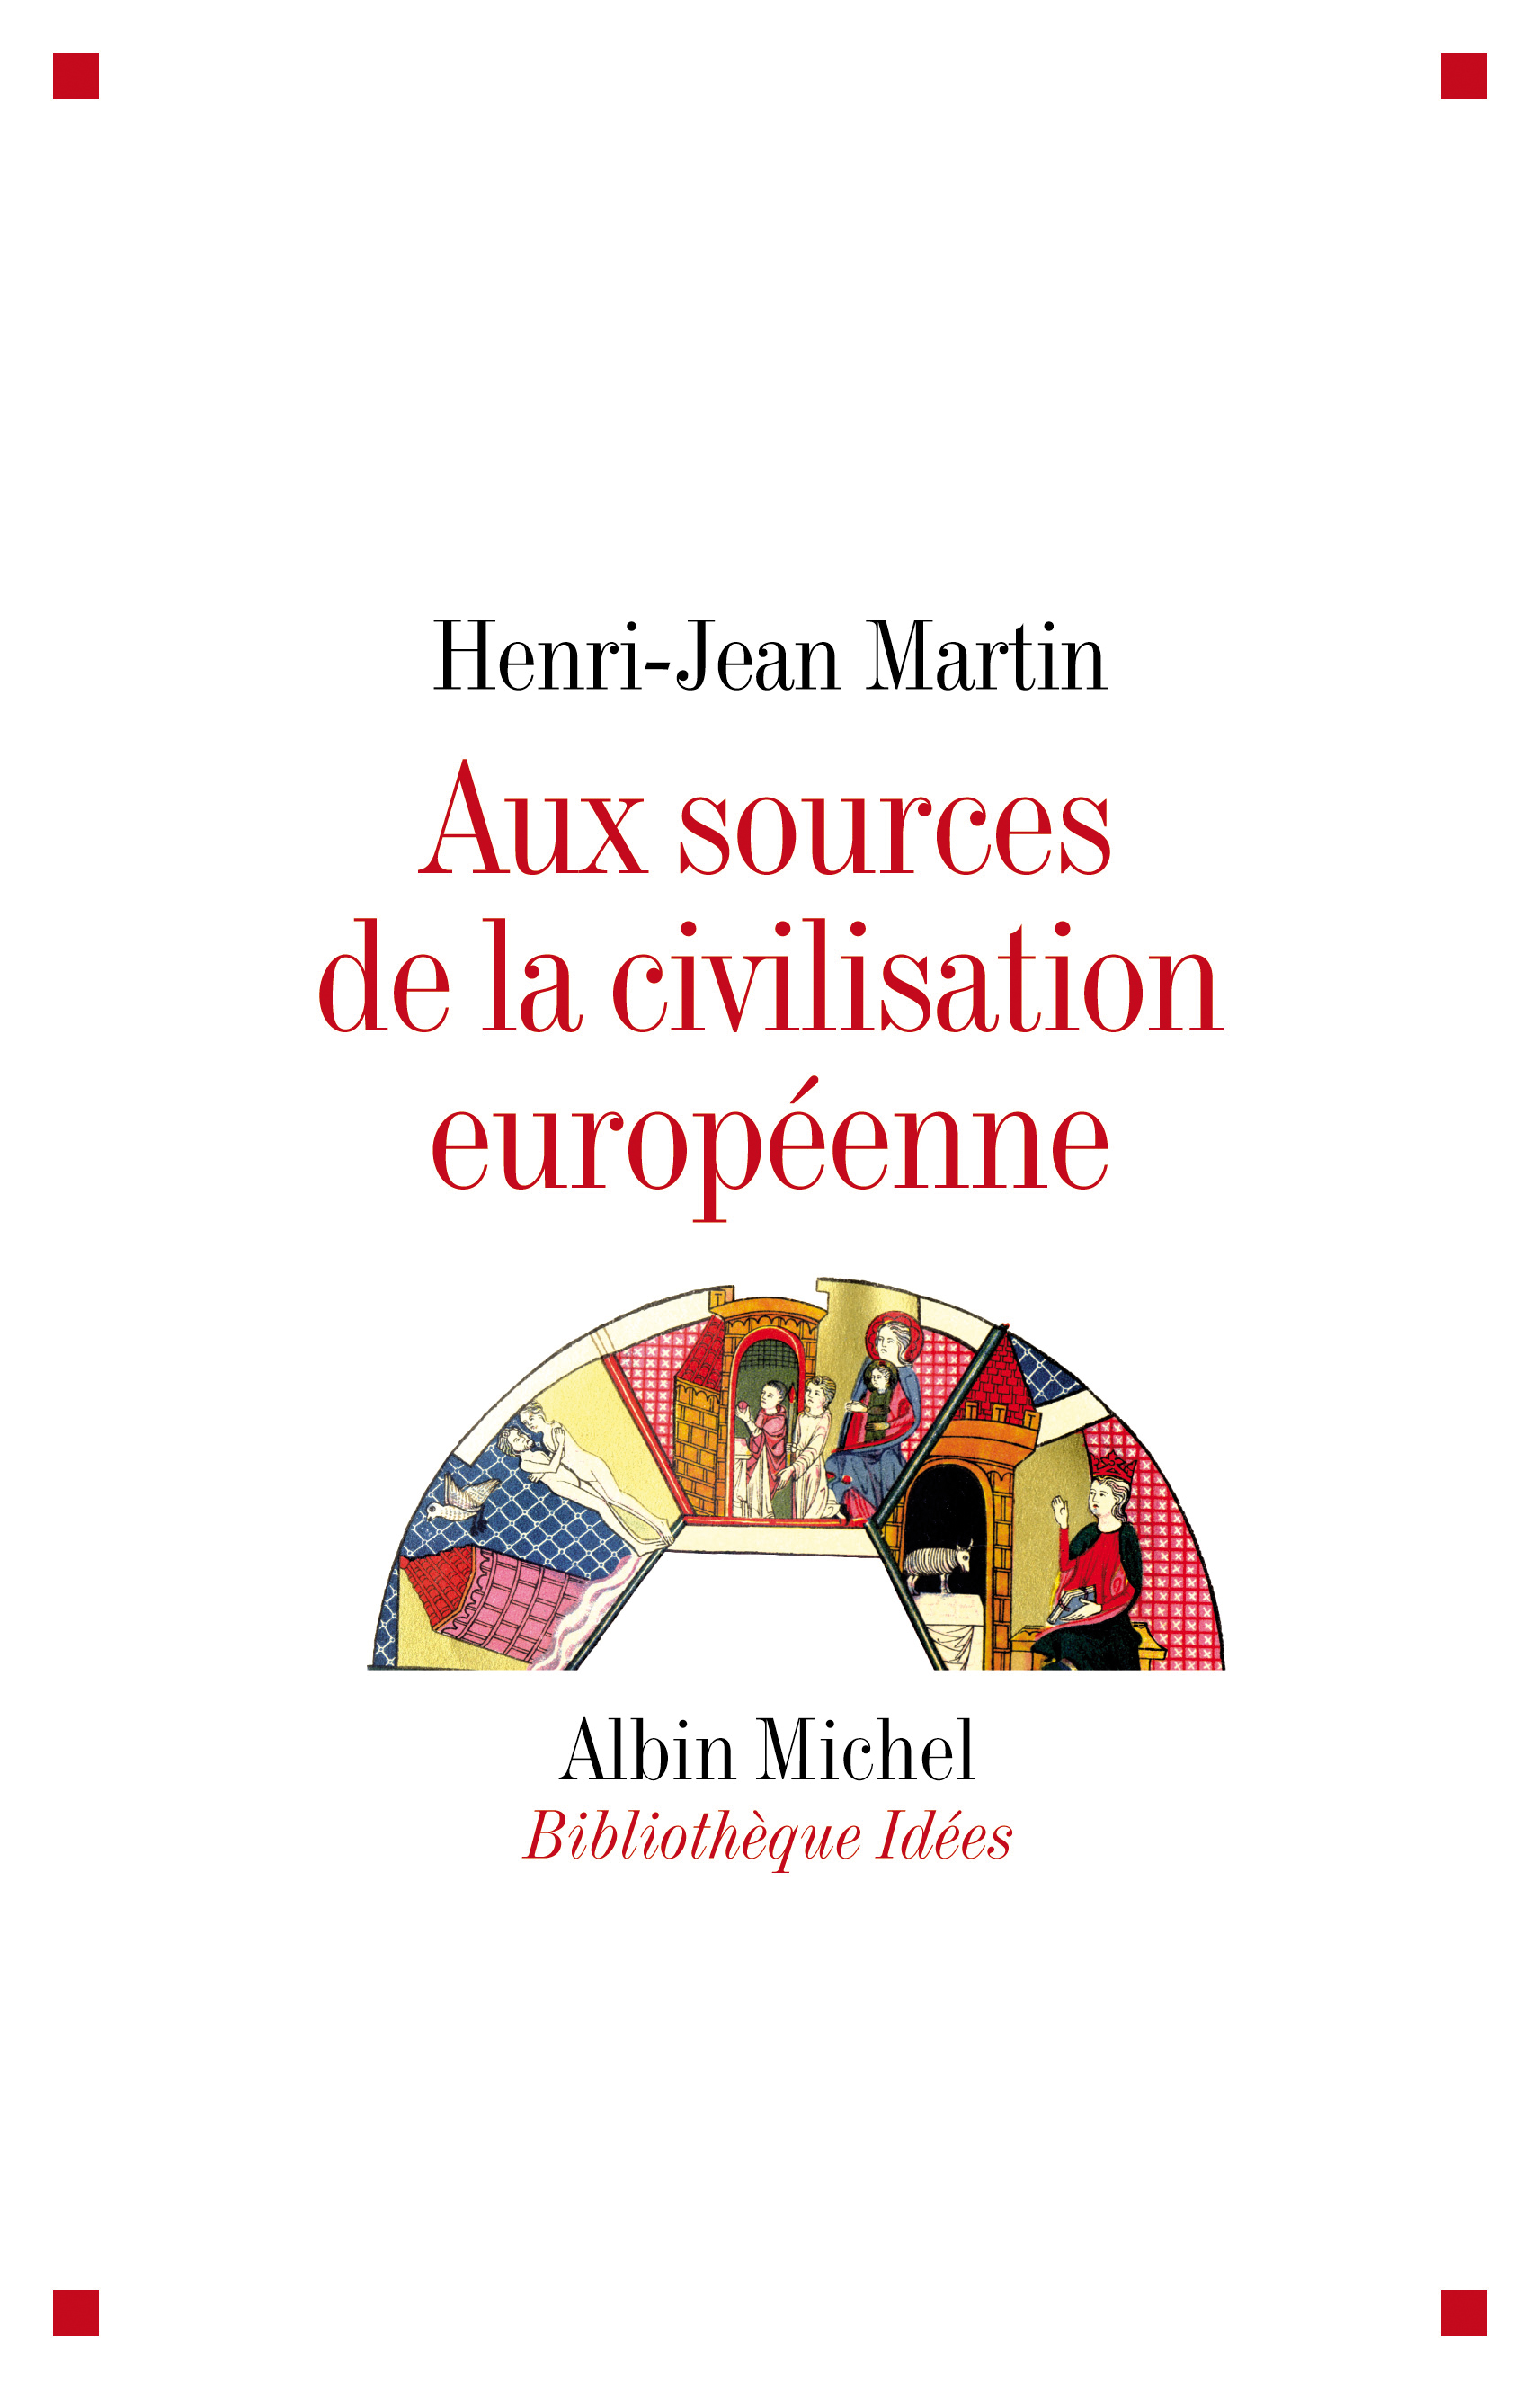 Couverture du livre Aux sources de la civilisation européenne